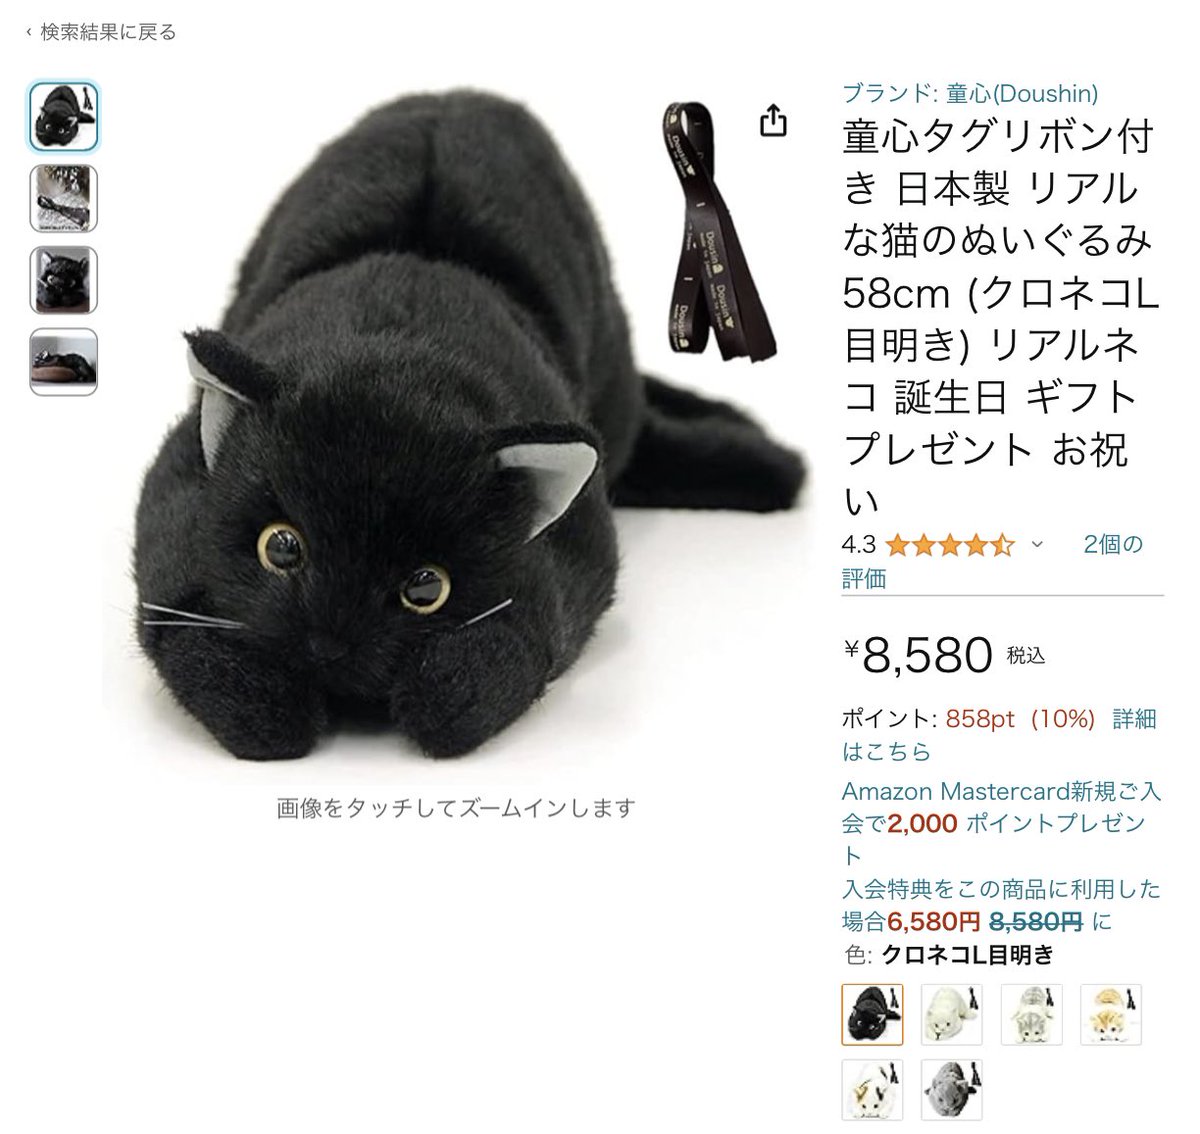 ぬいぐるみメーカーさん「怪しい出品はないか」Amazon巡回中に黒猫